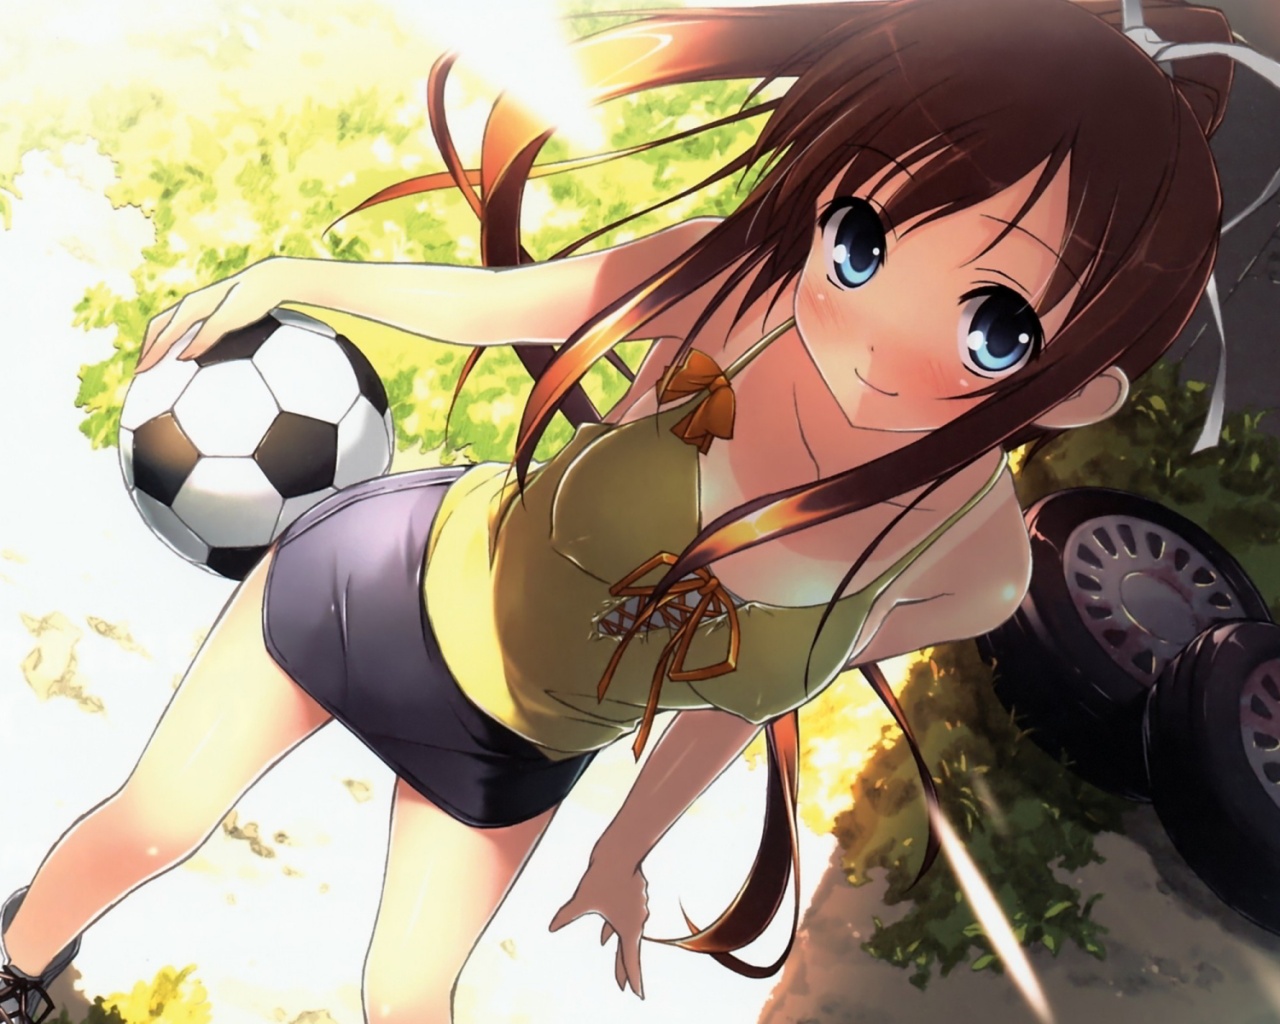 Anime soccer girl